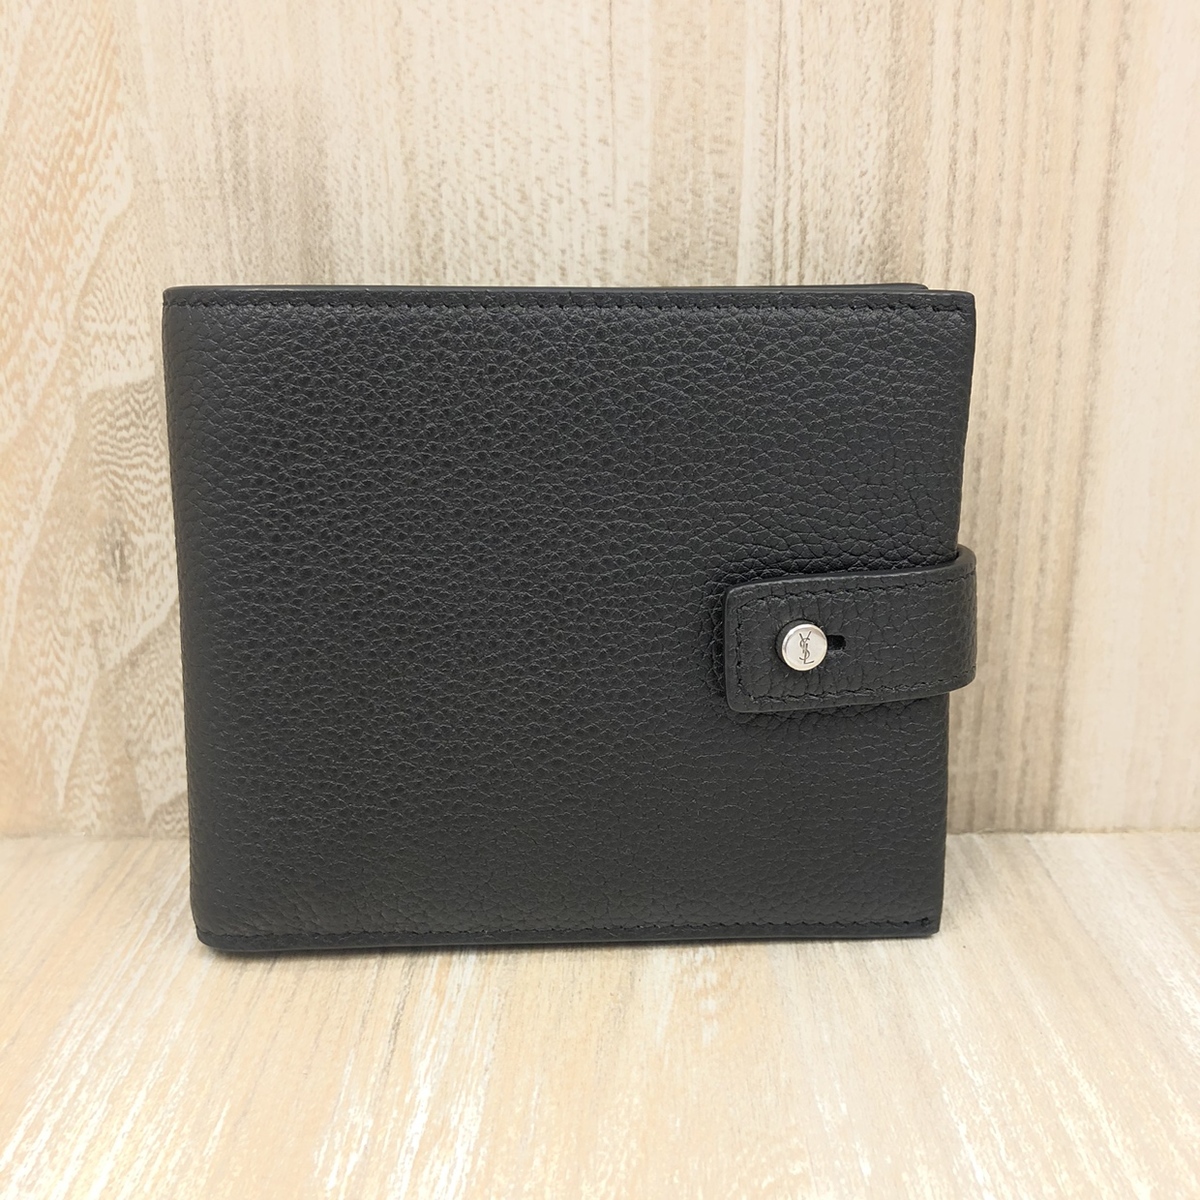 サンローランのGBL507618 ブラック レザー素材 2つ折り財布の買取実績です。